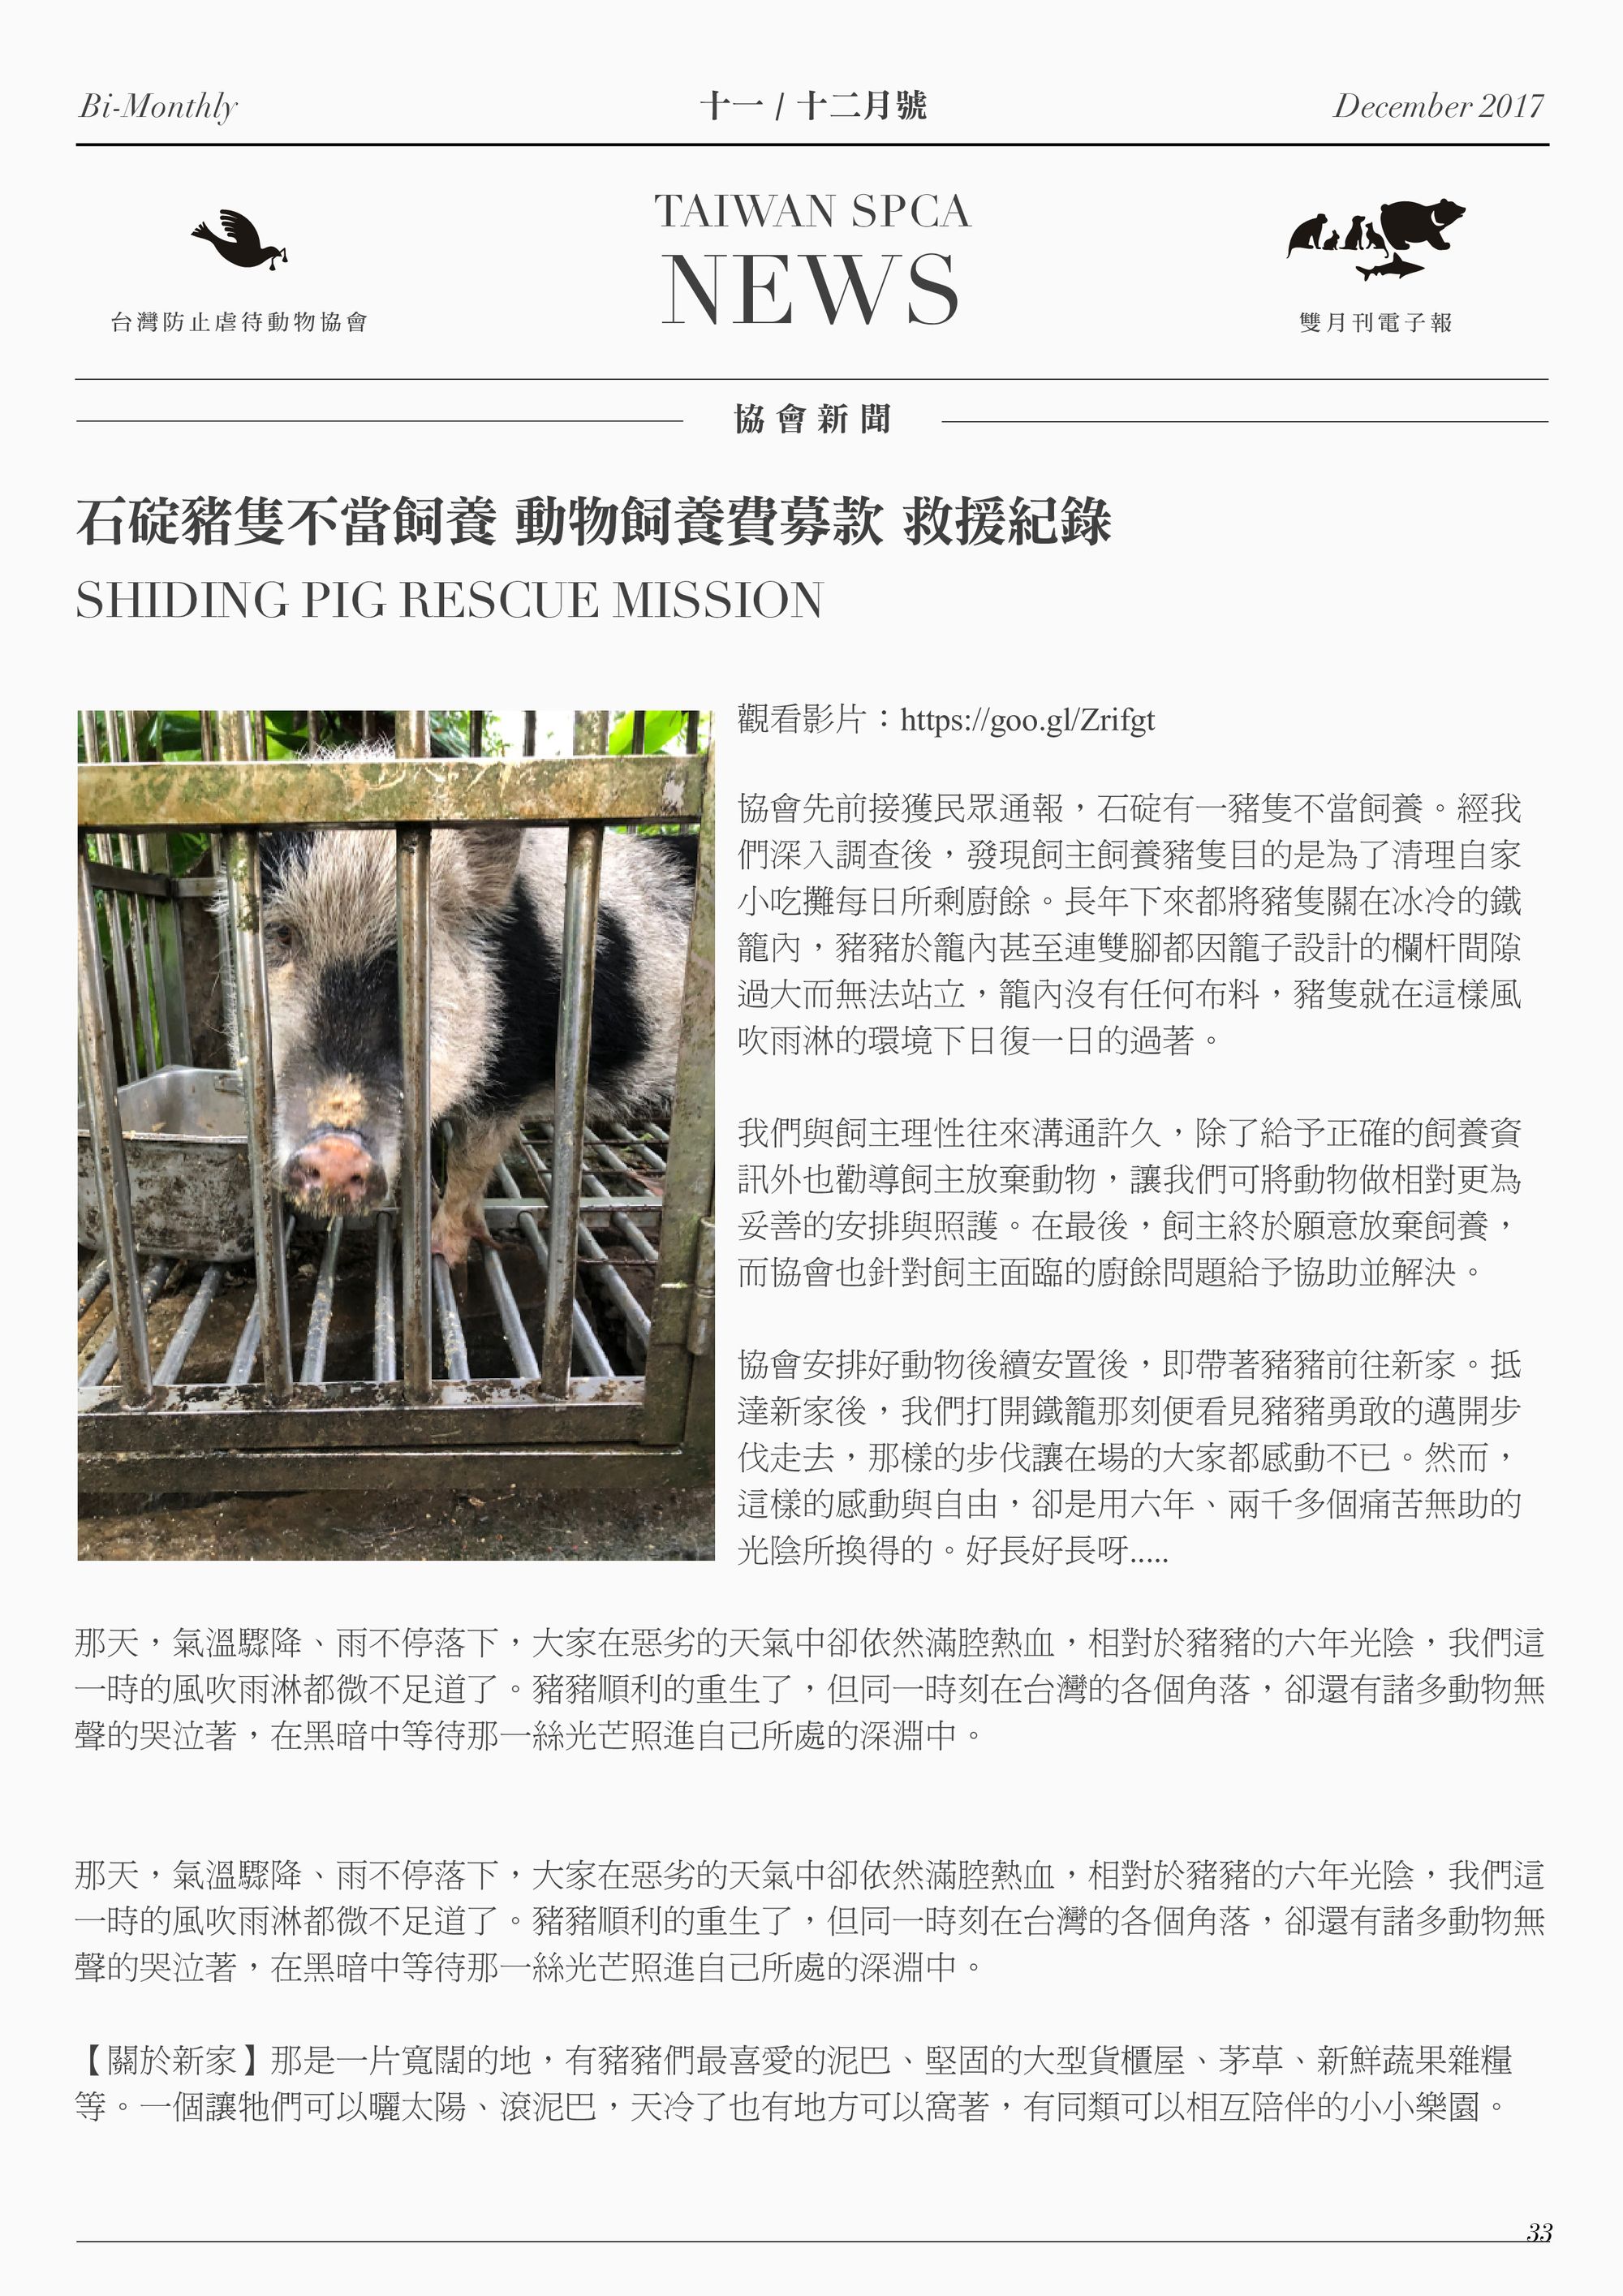 石碇豬隻不當飼養 動物飼養費募款 救援紀錄